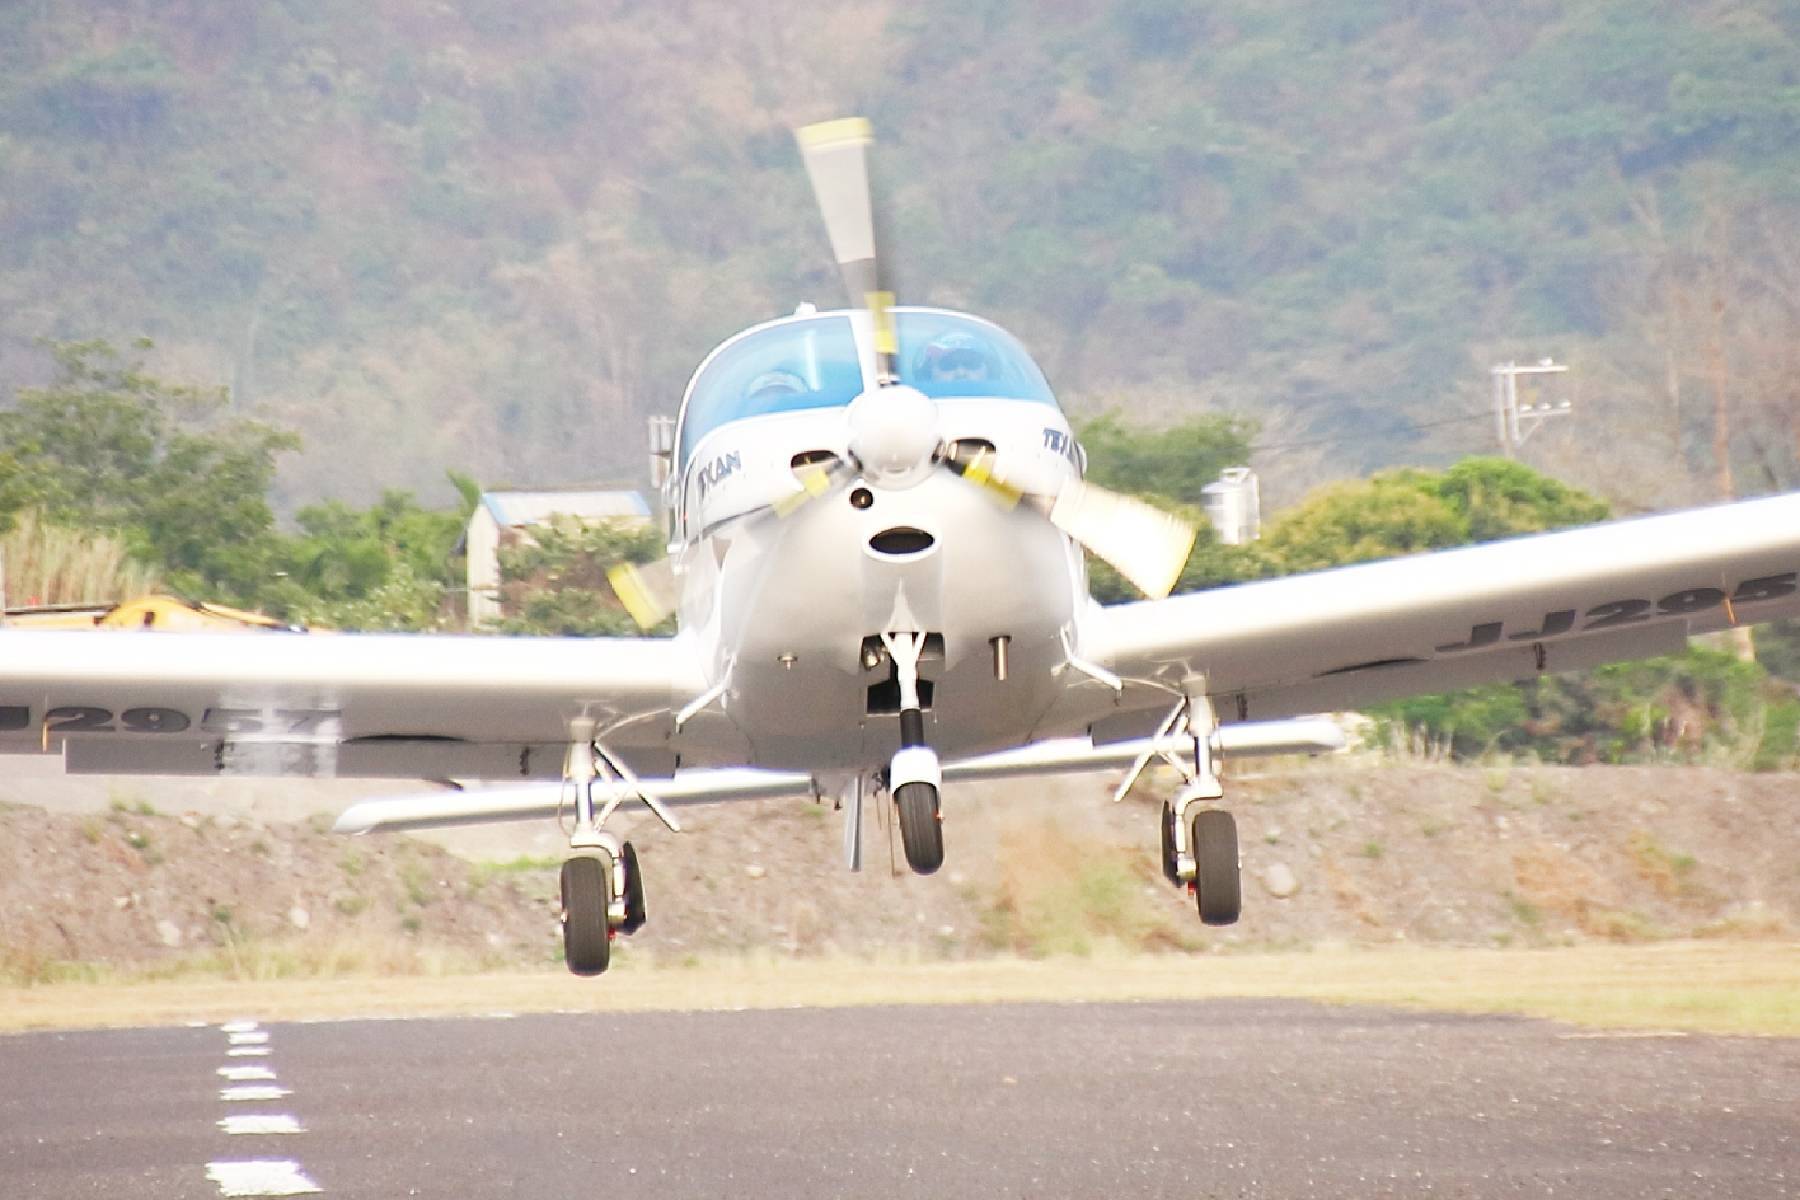 Vp航空-輕航機單人單機60分鐘體驗券22